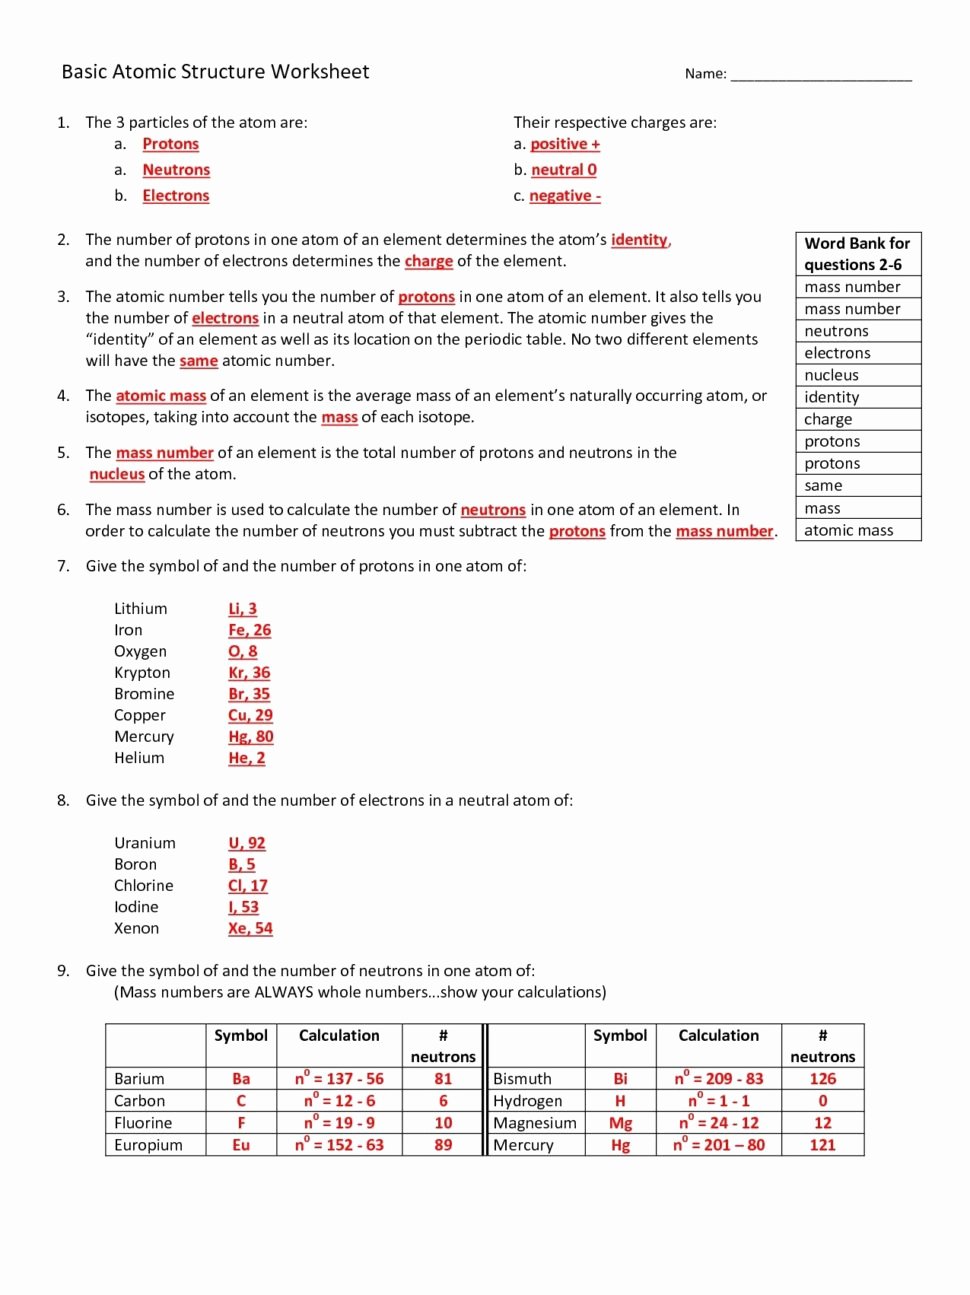 Basic atomic Structure Worksheet Unique Worksheets Line Chapter 1 Worksheet Mogenk Paper Works